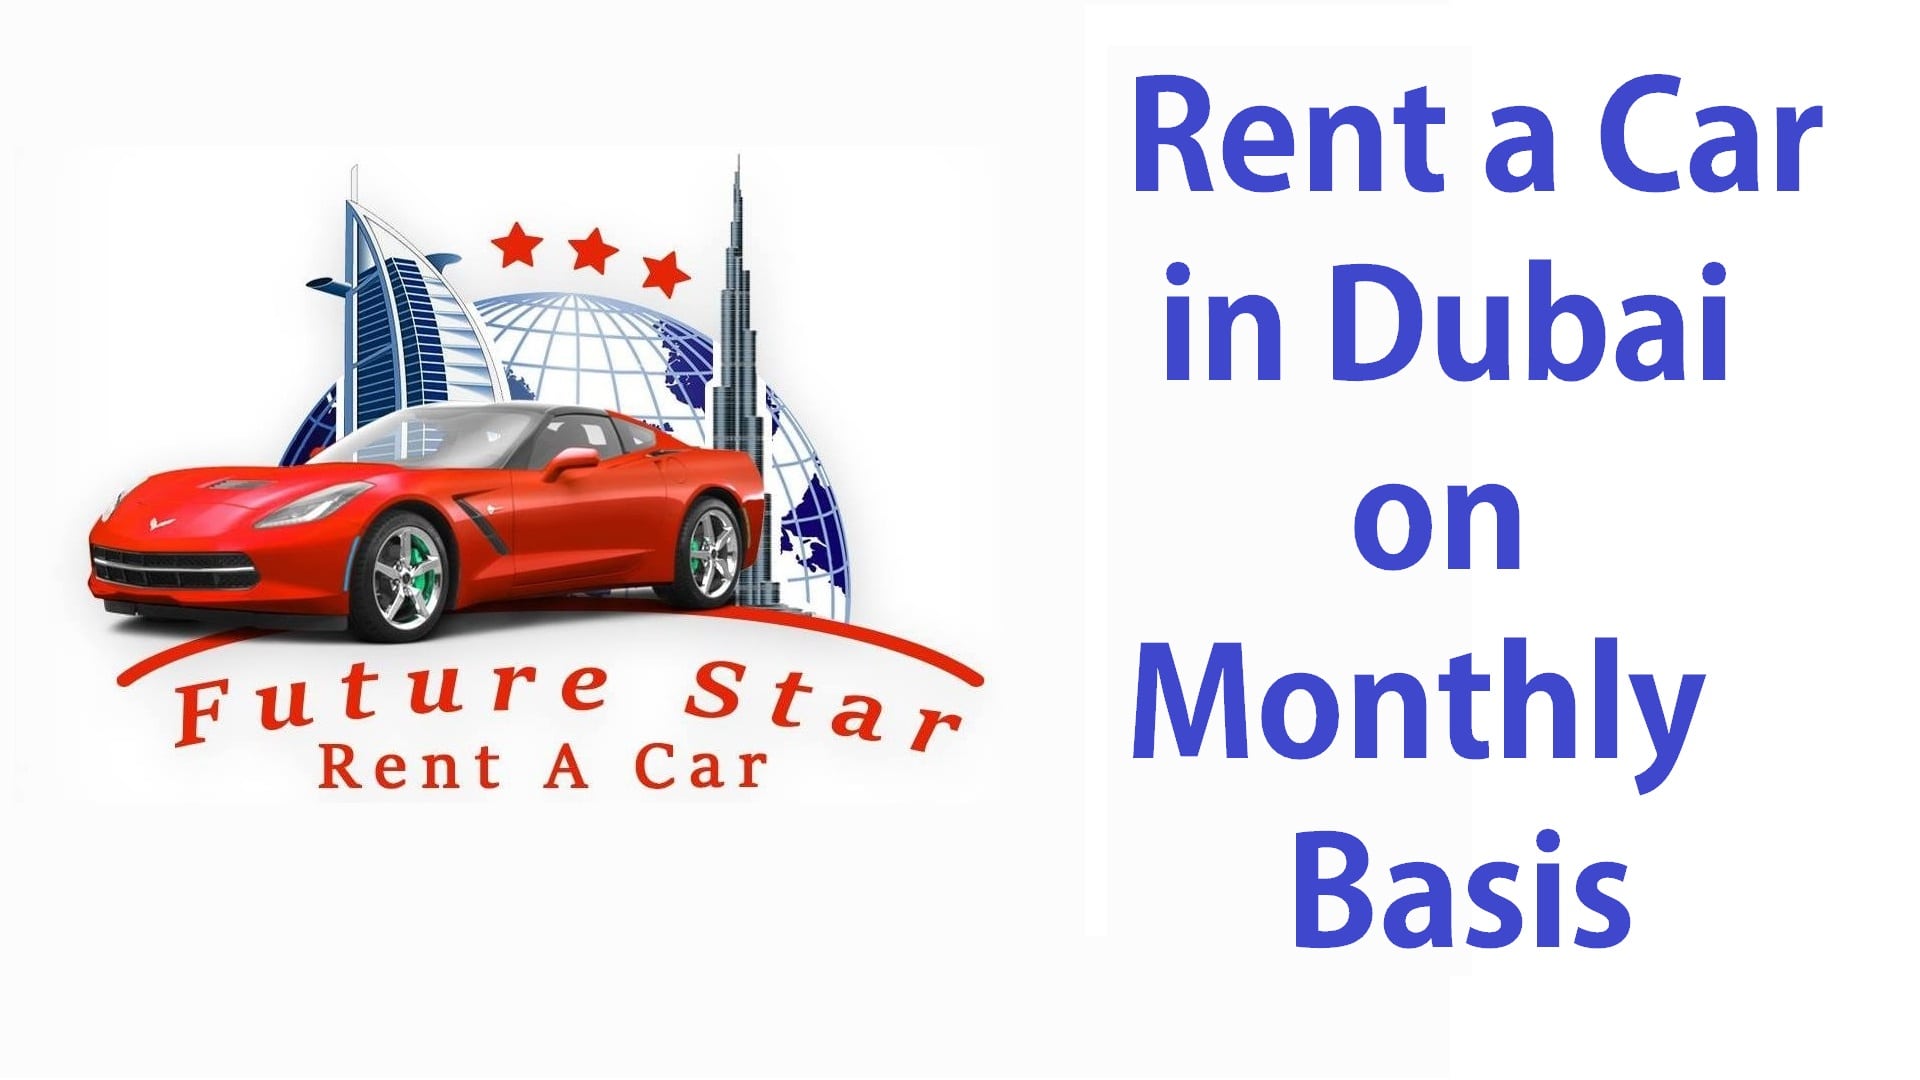 rent-car-dubai-monthly-basis-min.jpeg